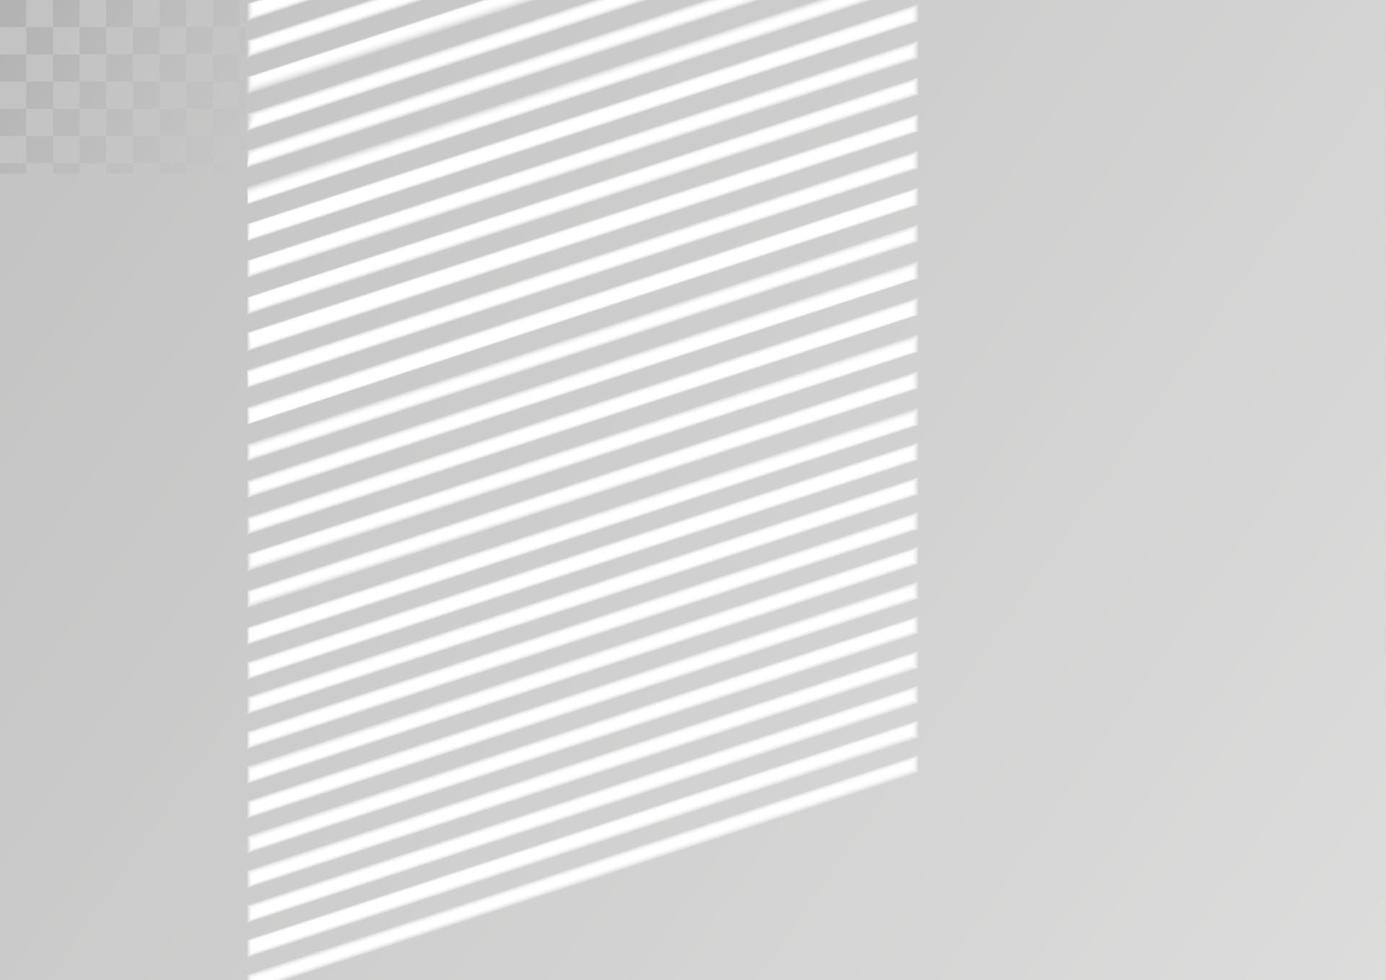 sombra de janela e persianas. efeito de luz realista de sombras e iluminação natural. ilustração vetorial vetor